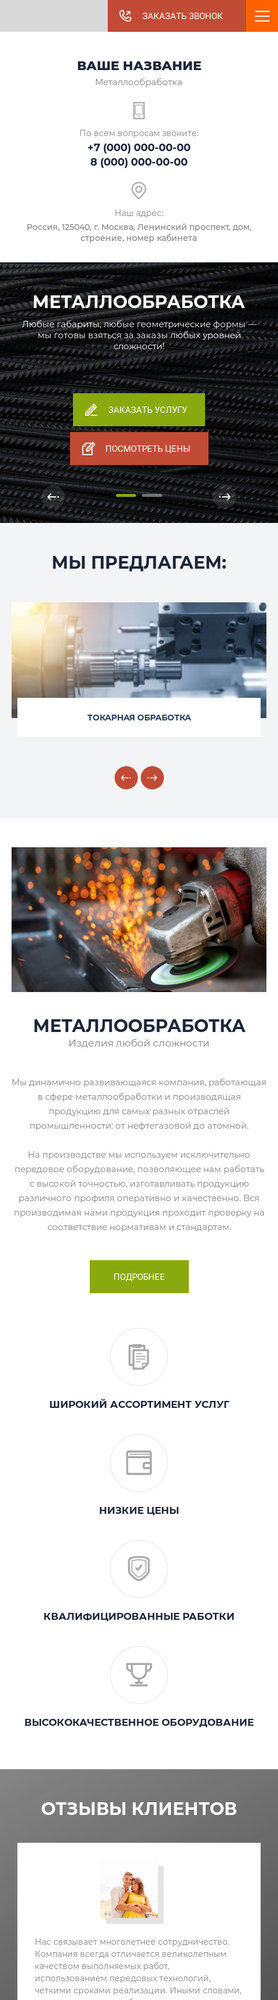 Готовый Сайт-Бизнес № 2599423 - Сайт компании по металлообработке (Мобильная версия)